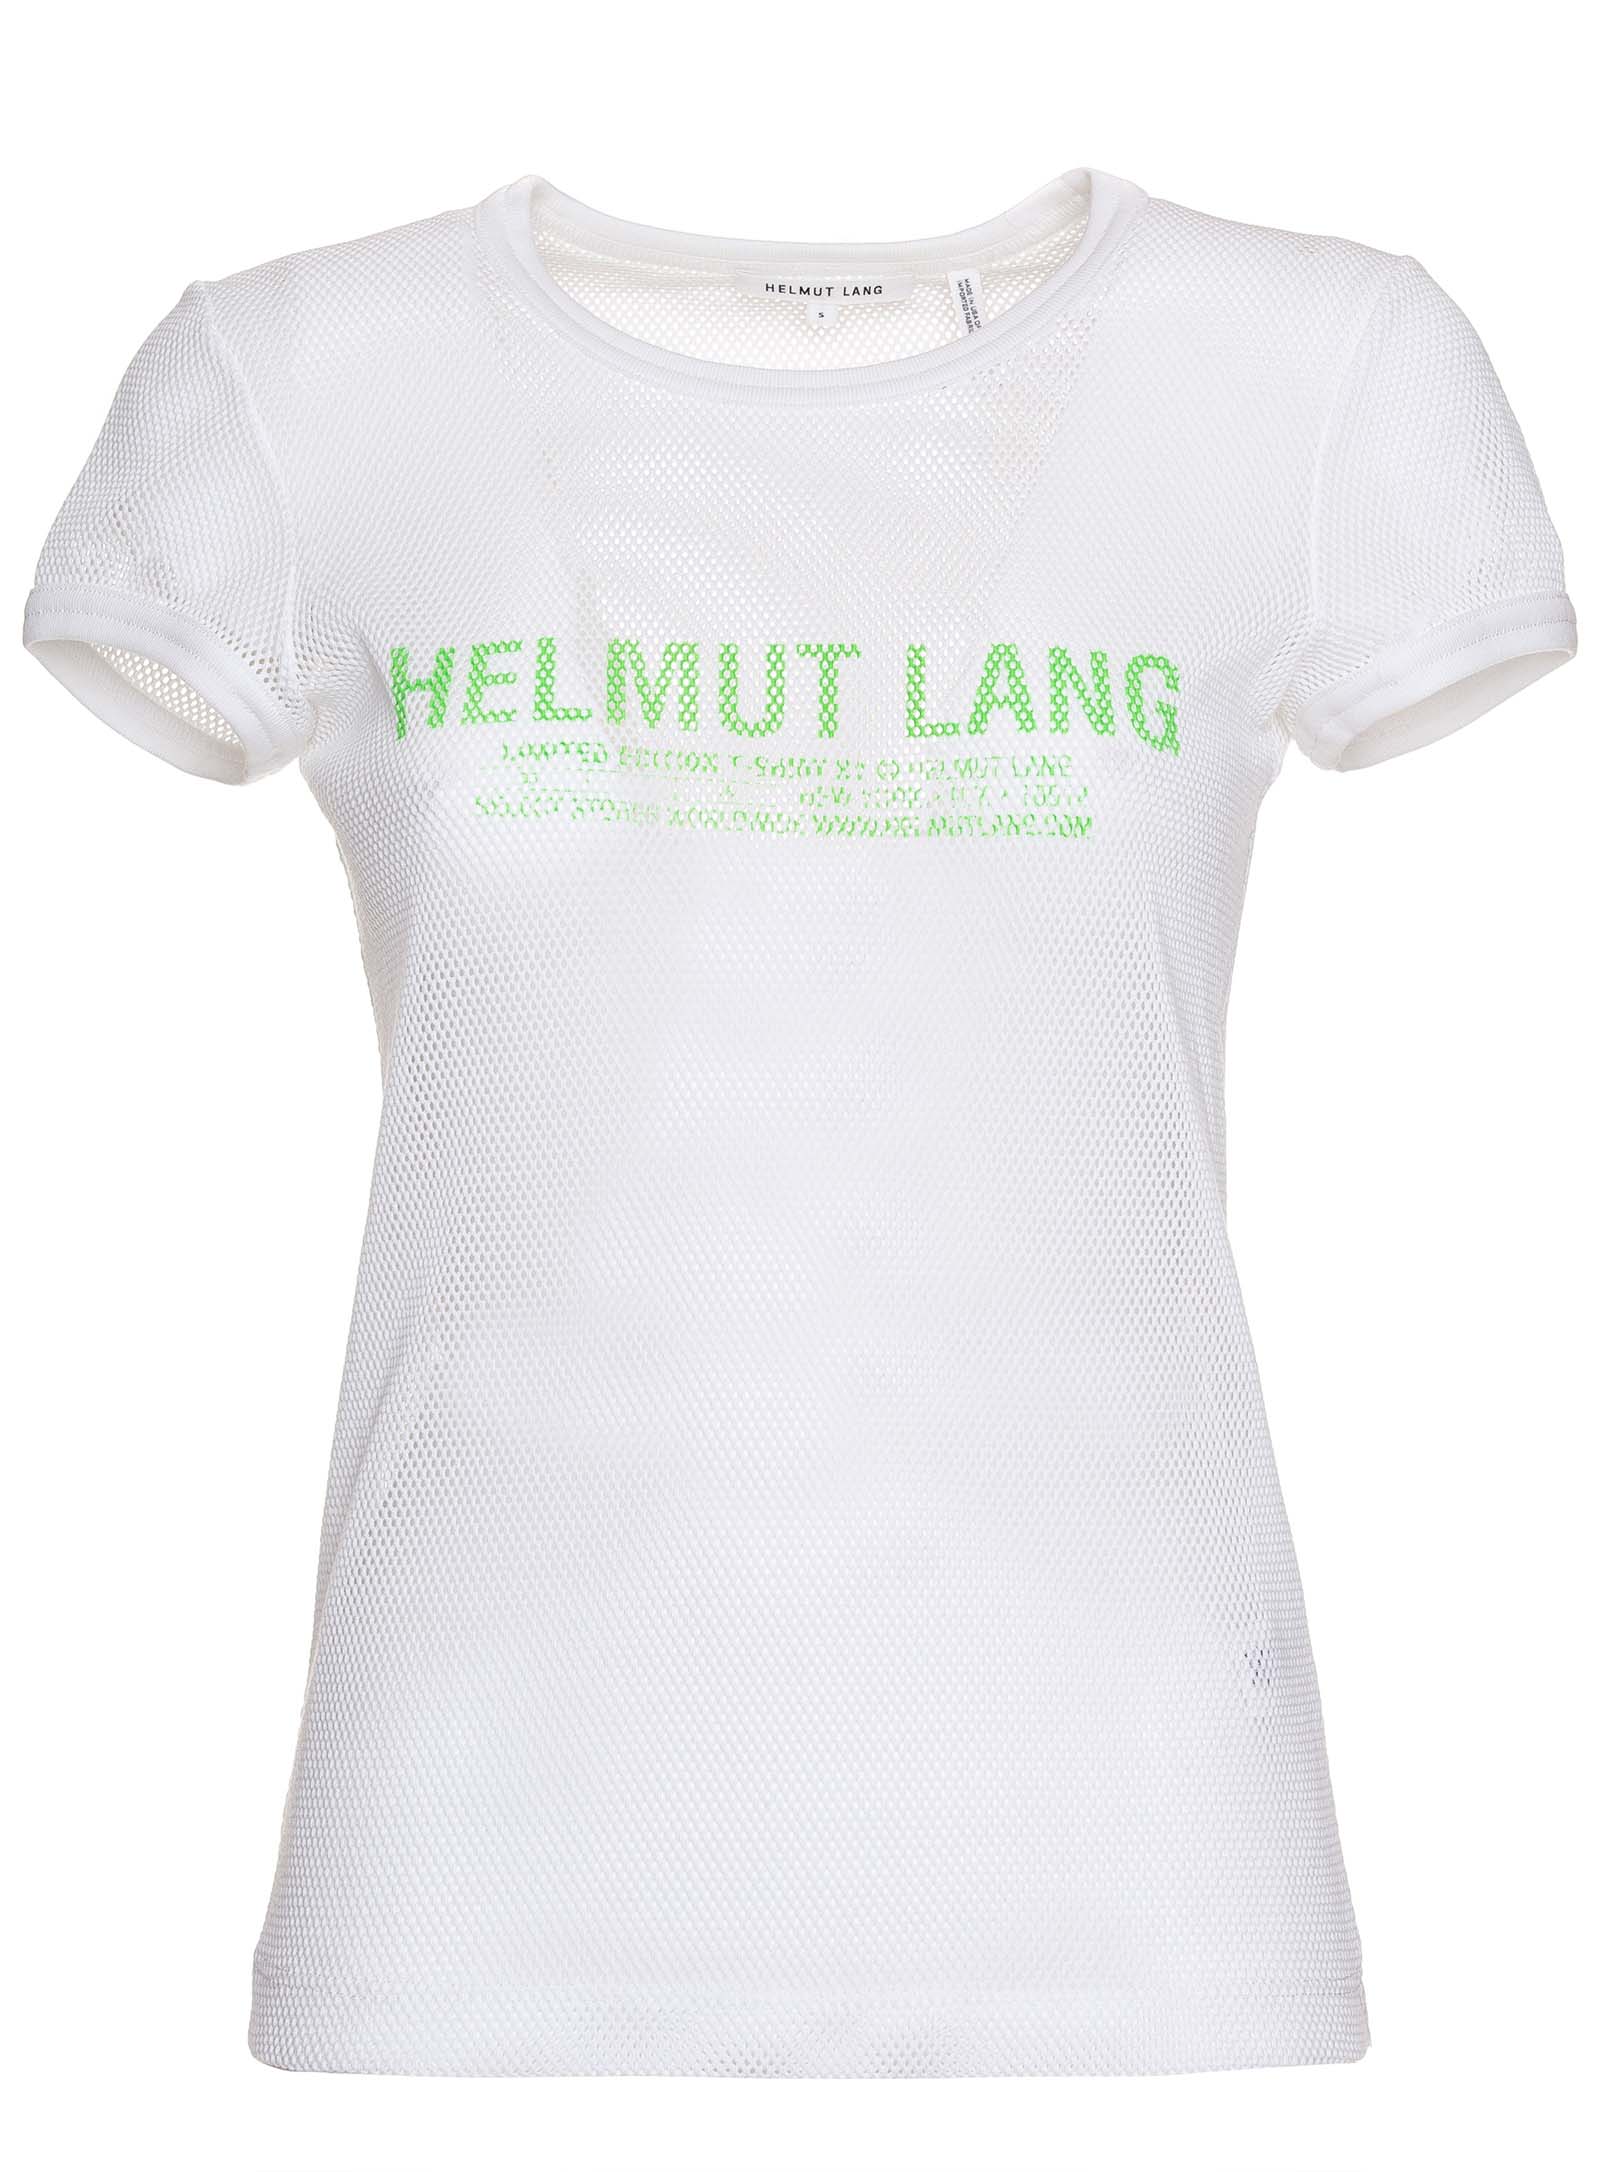 Sheer Logo - Helmut Lang Sheer Logo Baby Tee In White Clothing